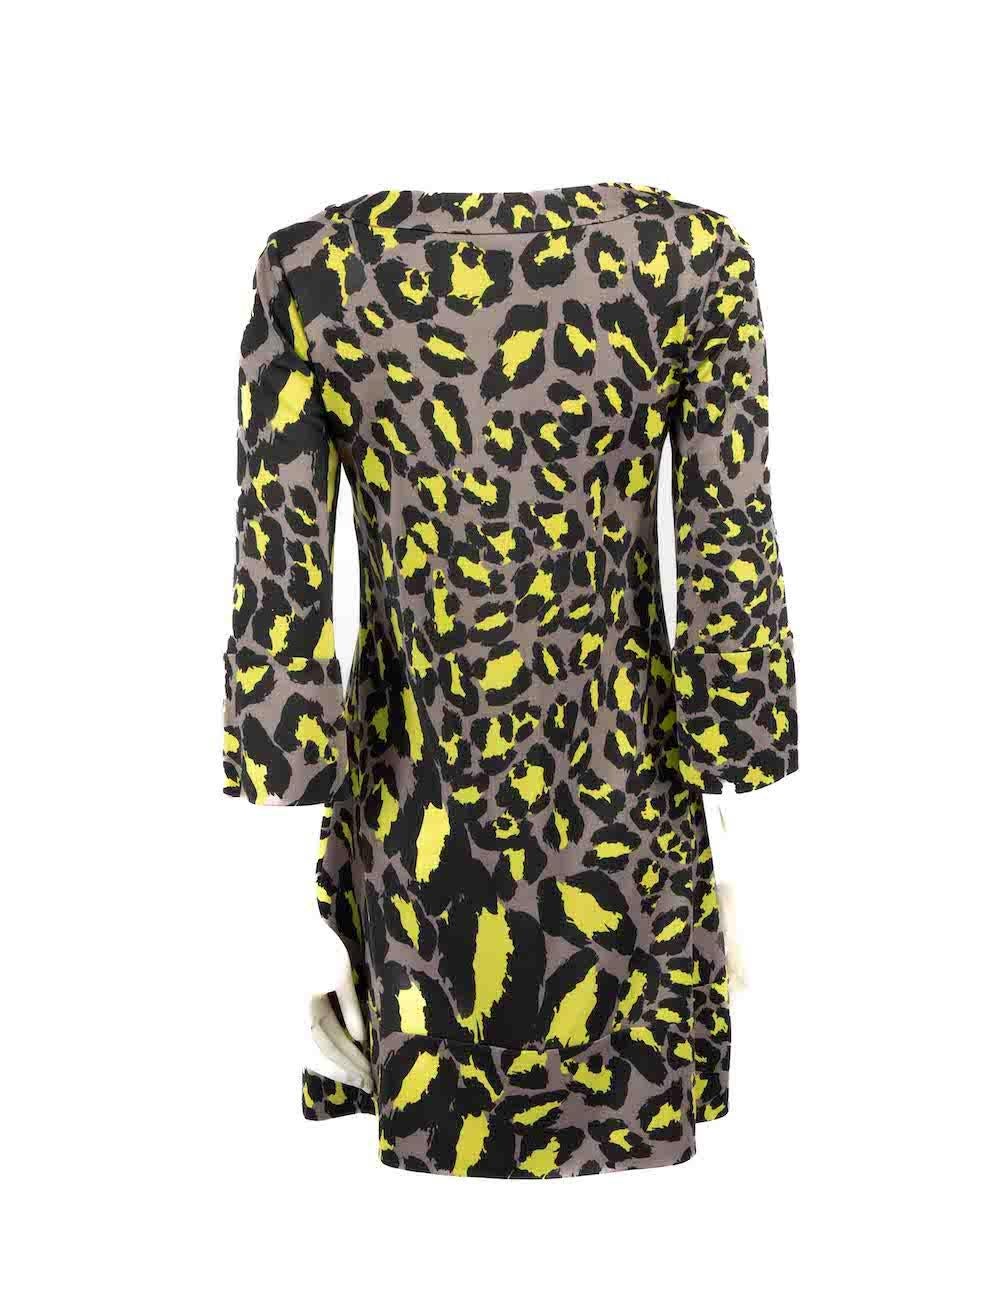 Diane Von Furstenberg Vintage Grey Silk Leopard Dress Size M In Good Condition For Sale In London, GB